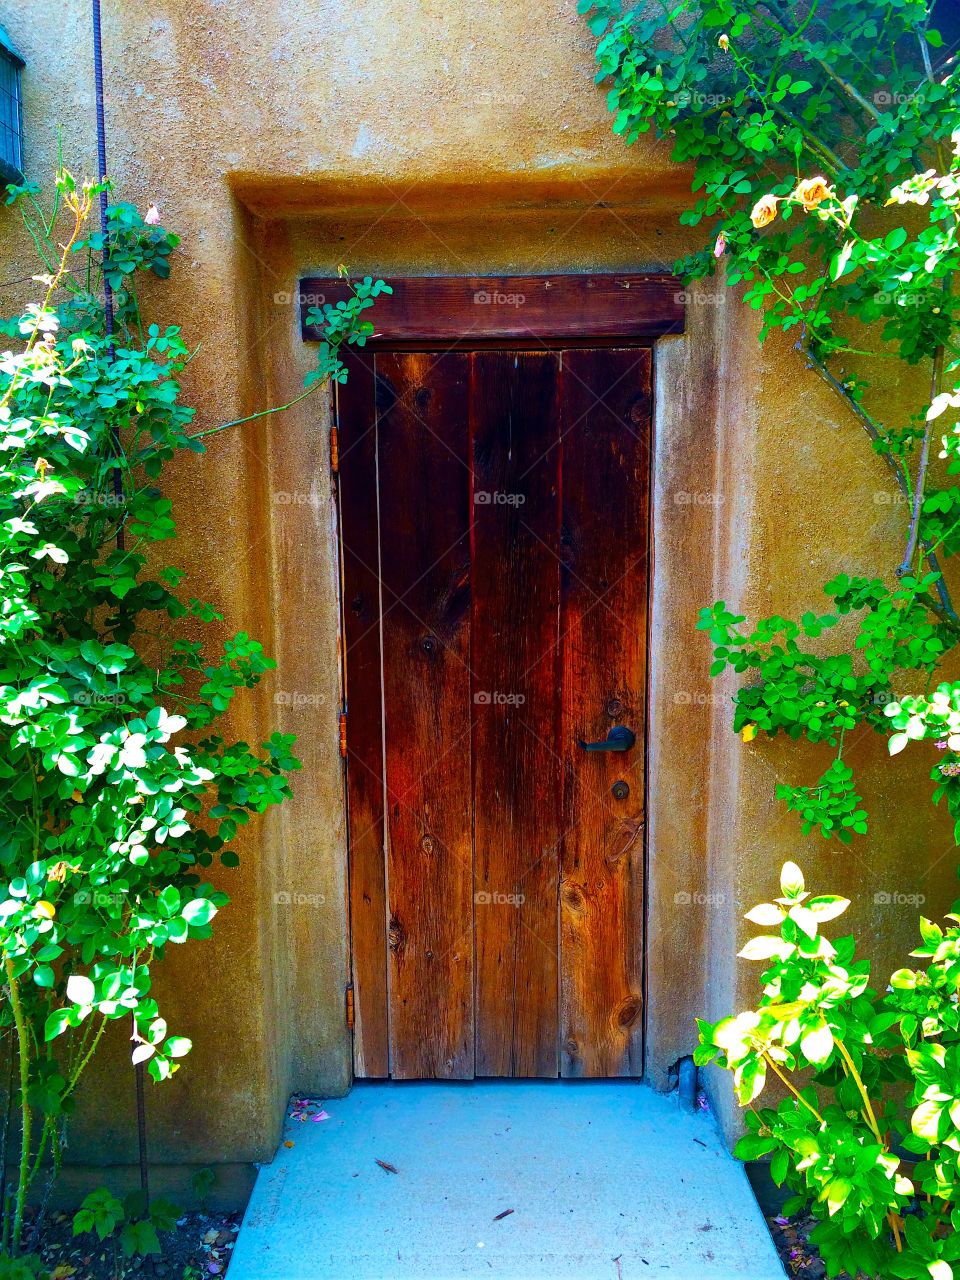 Random beauty door . Photo taken at Descanso Gardens 